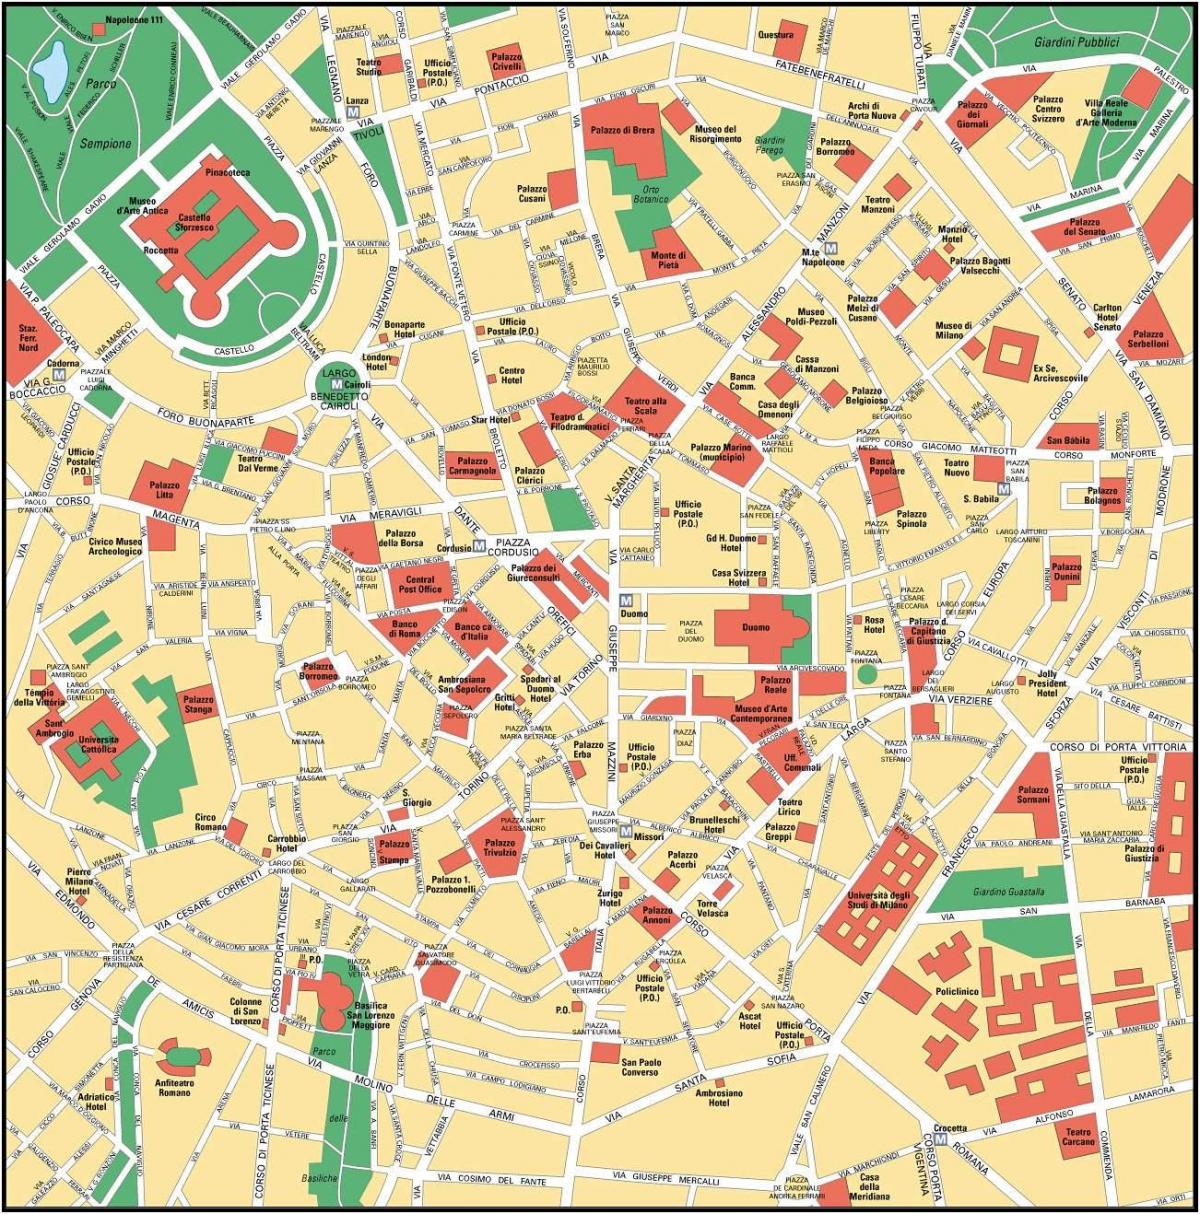 میلان اٹلی کے شہر کے مرکز نقشہ